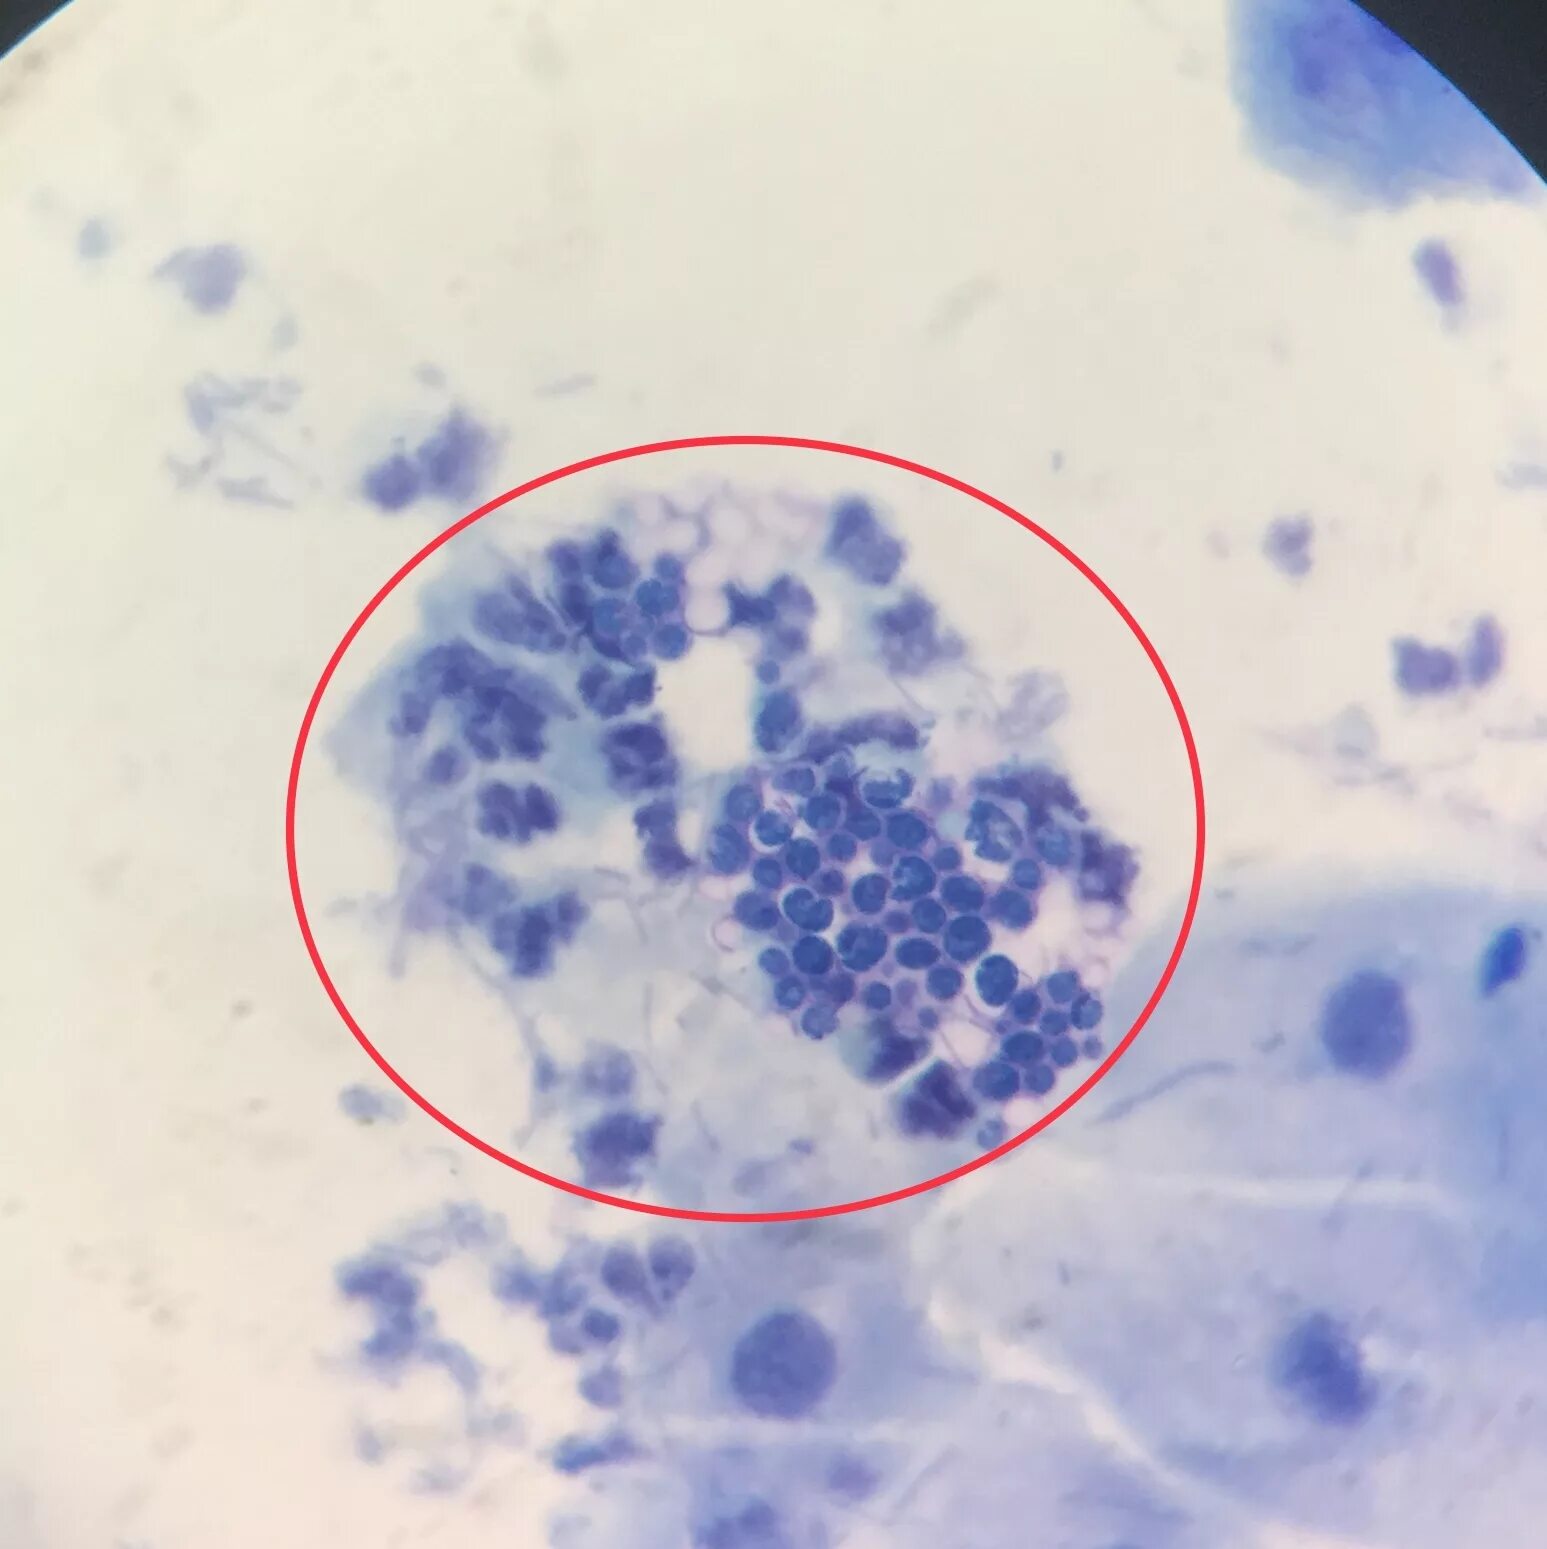 Грибы кандида микроскопия. Псевдомицелий кандида. Мазок кандида микроскопия. Candida albicans мазок микроскопия.